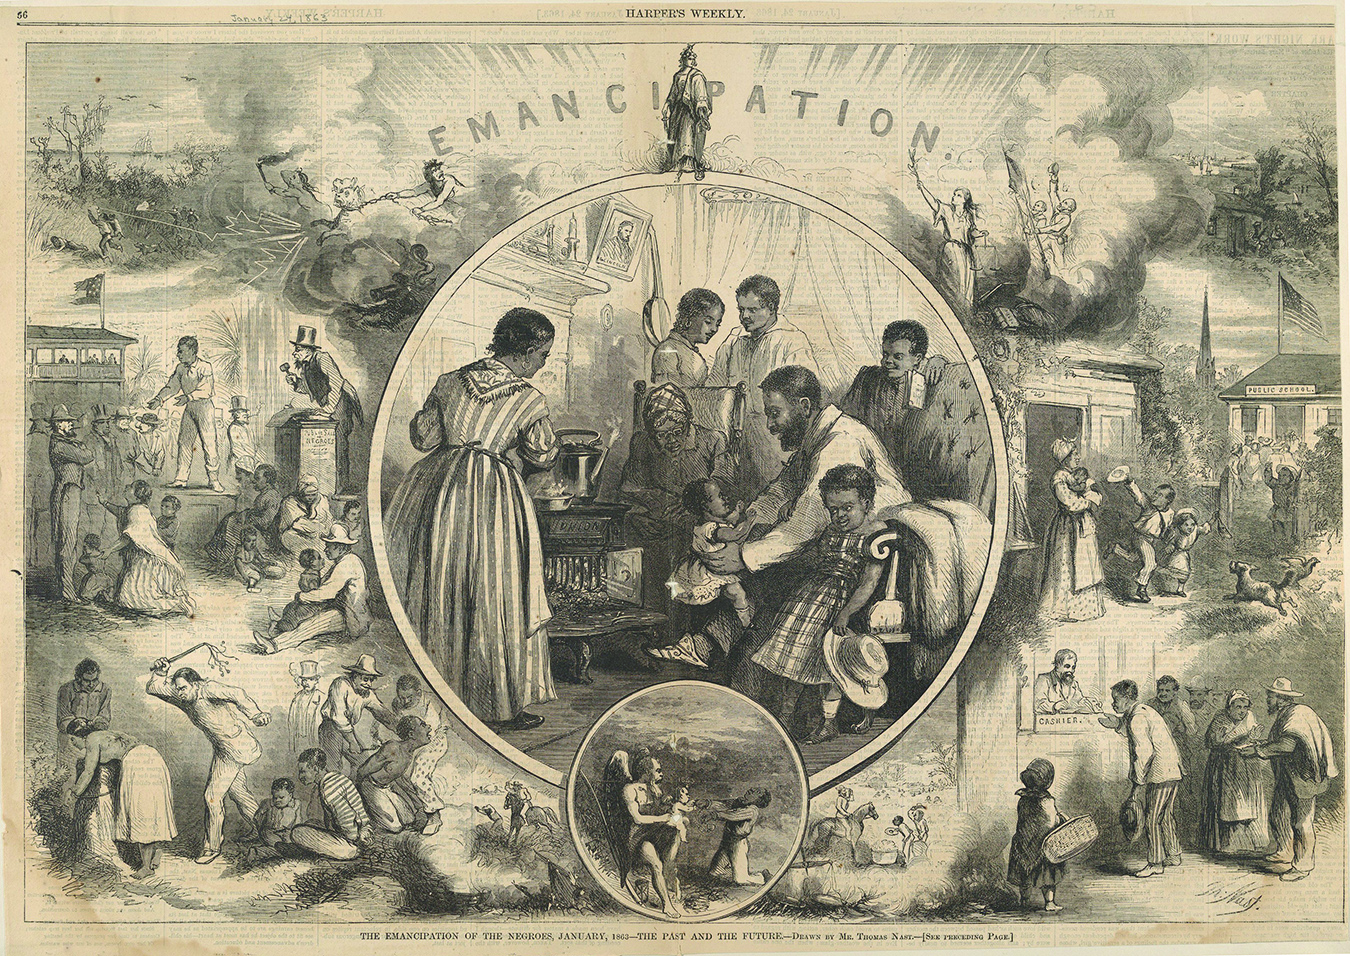 Thomas Nast Emancipation drawing